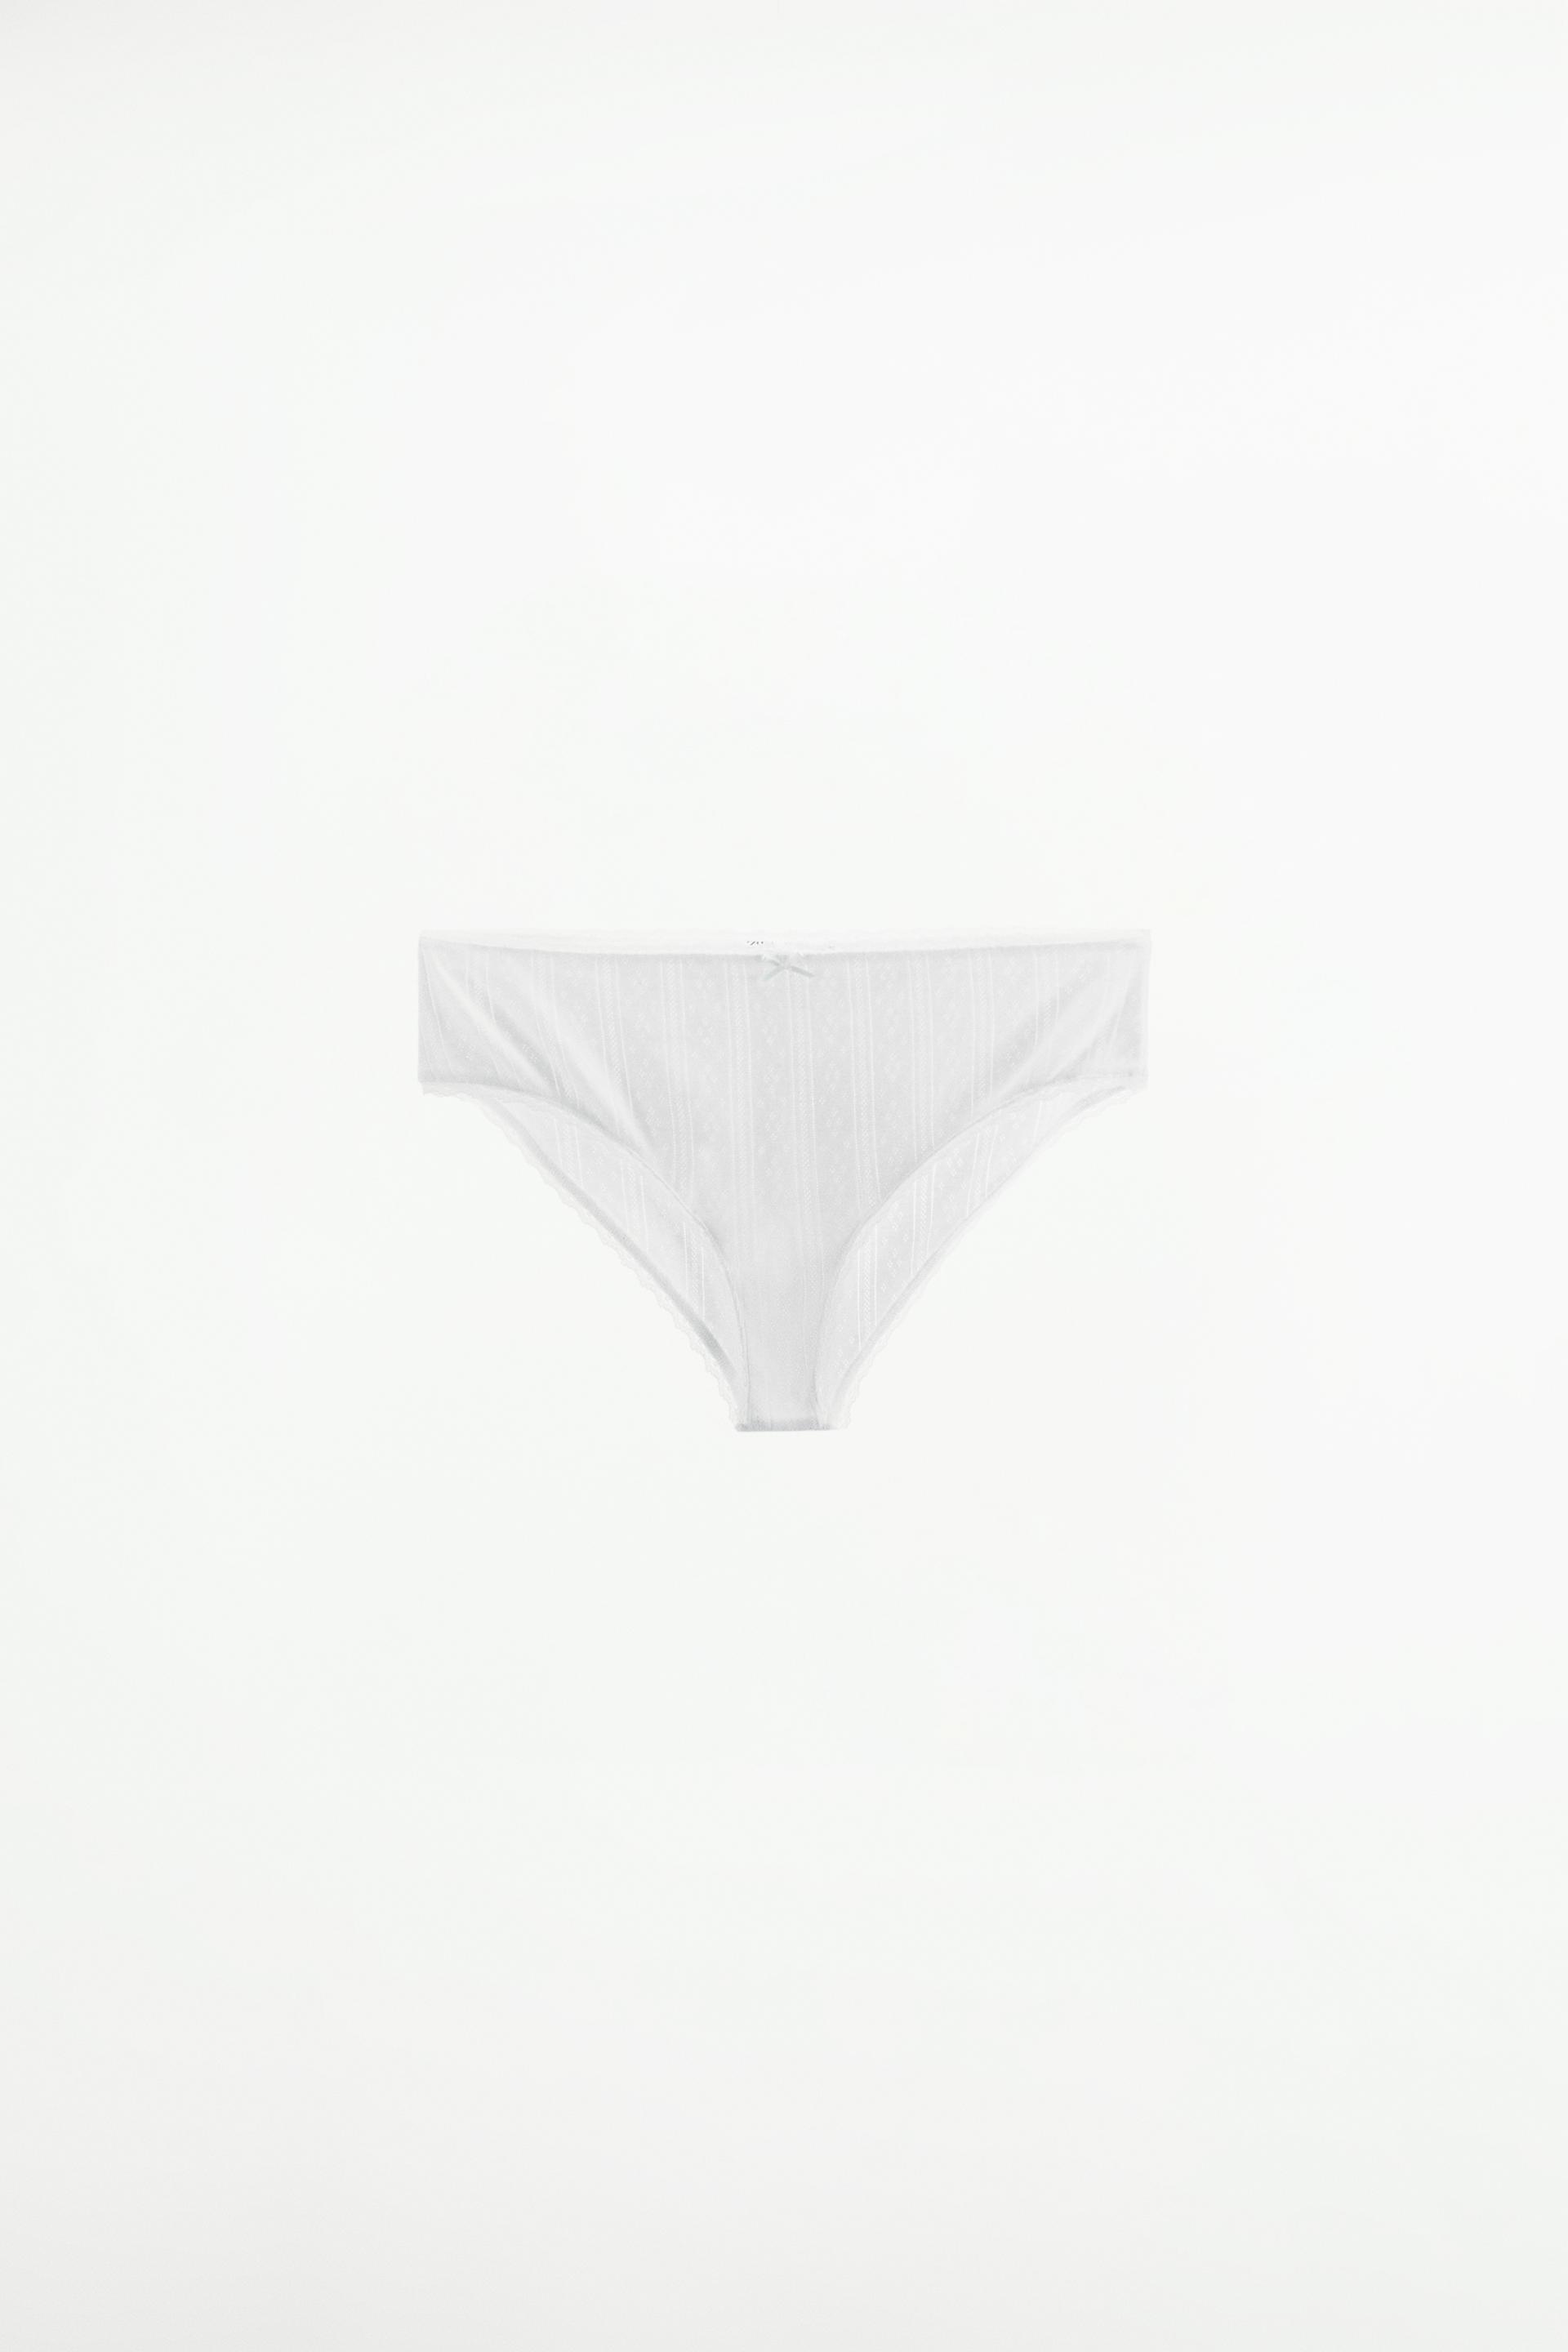 Hanssop SET - LUXURIOUS LACE POINTELLE - Underwear set - white